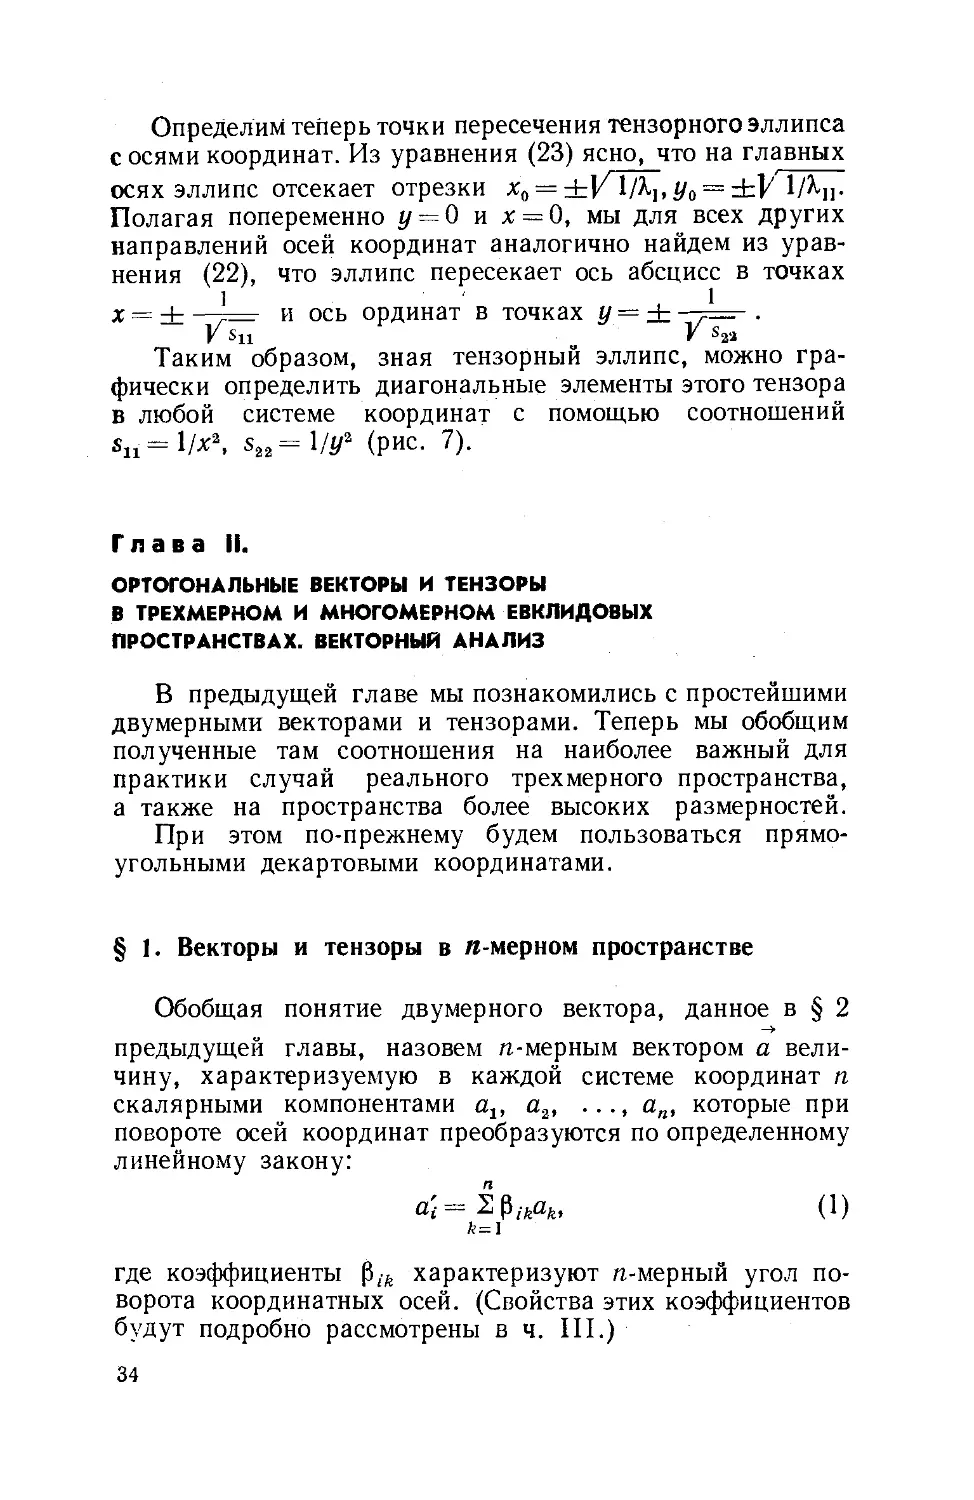 Глава II. Ортогональные векторы и тензоры в трехмерном и многомерном евклидовых пространствах. Векторный анализ